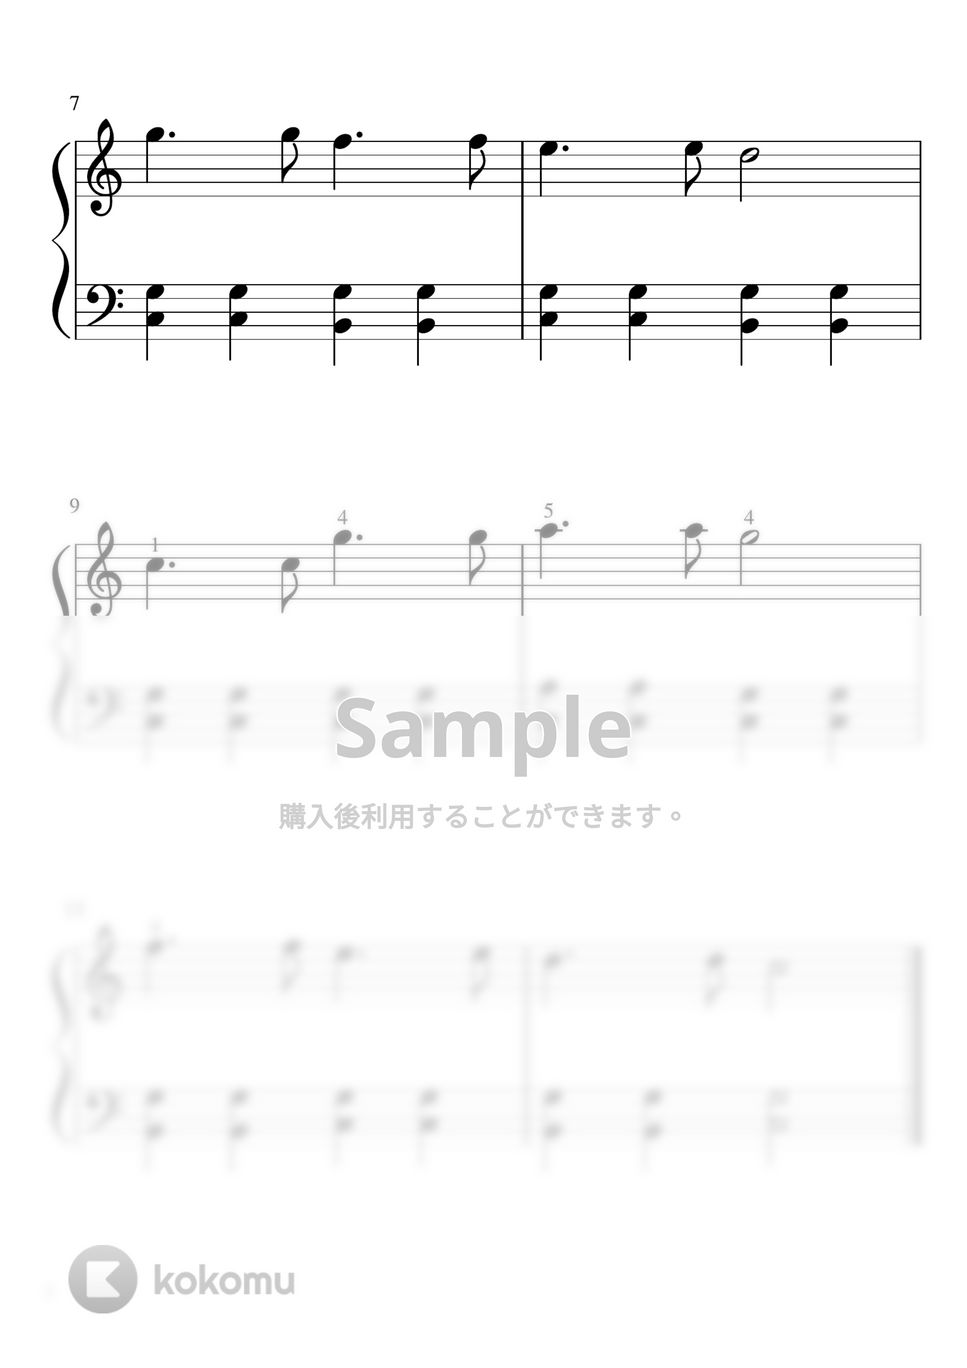 キラキラ星 (付点四分音符/ピアノソロ初級) by pfkaori